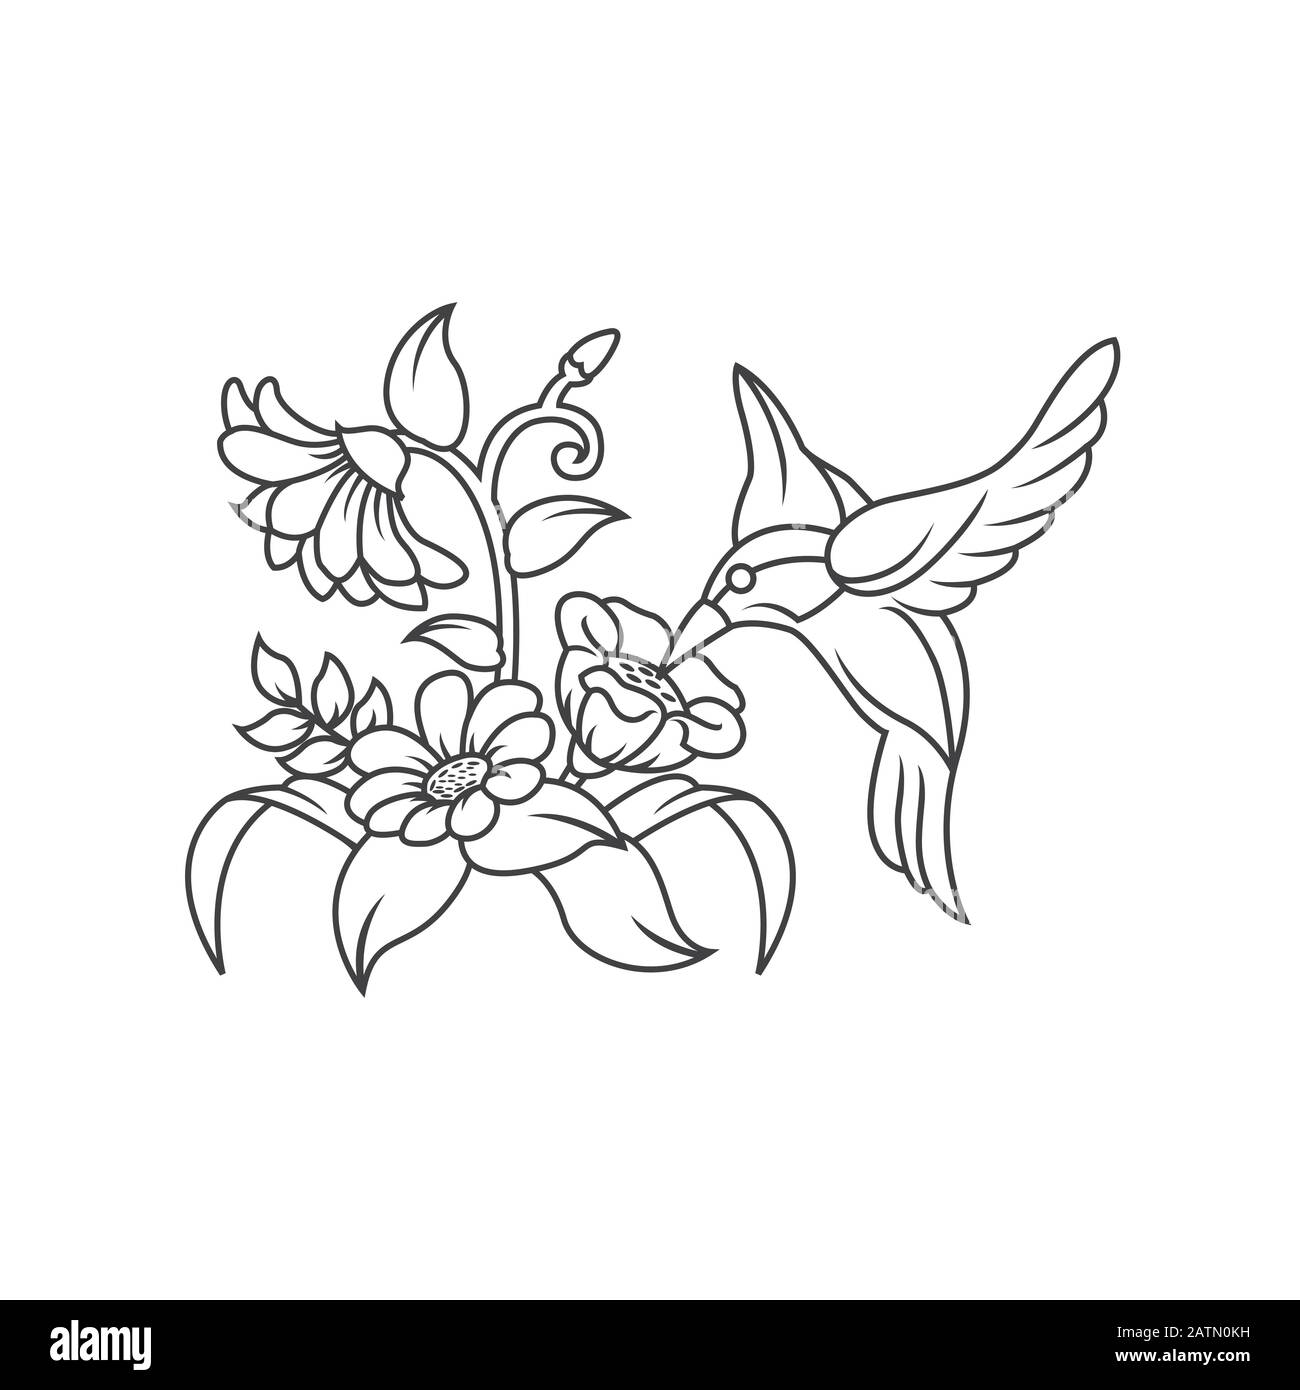 Icone tulipani alla moda e moderni simboli tulipani per loghi, web, applicazioni, UI. Una semplice icona a tulipano. Icona tulipano immagine vettoriale piatta per grafici Illustrazione Vettoriale